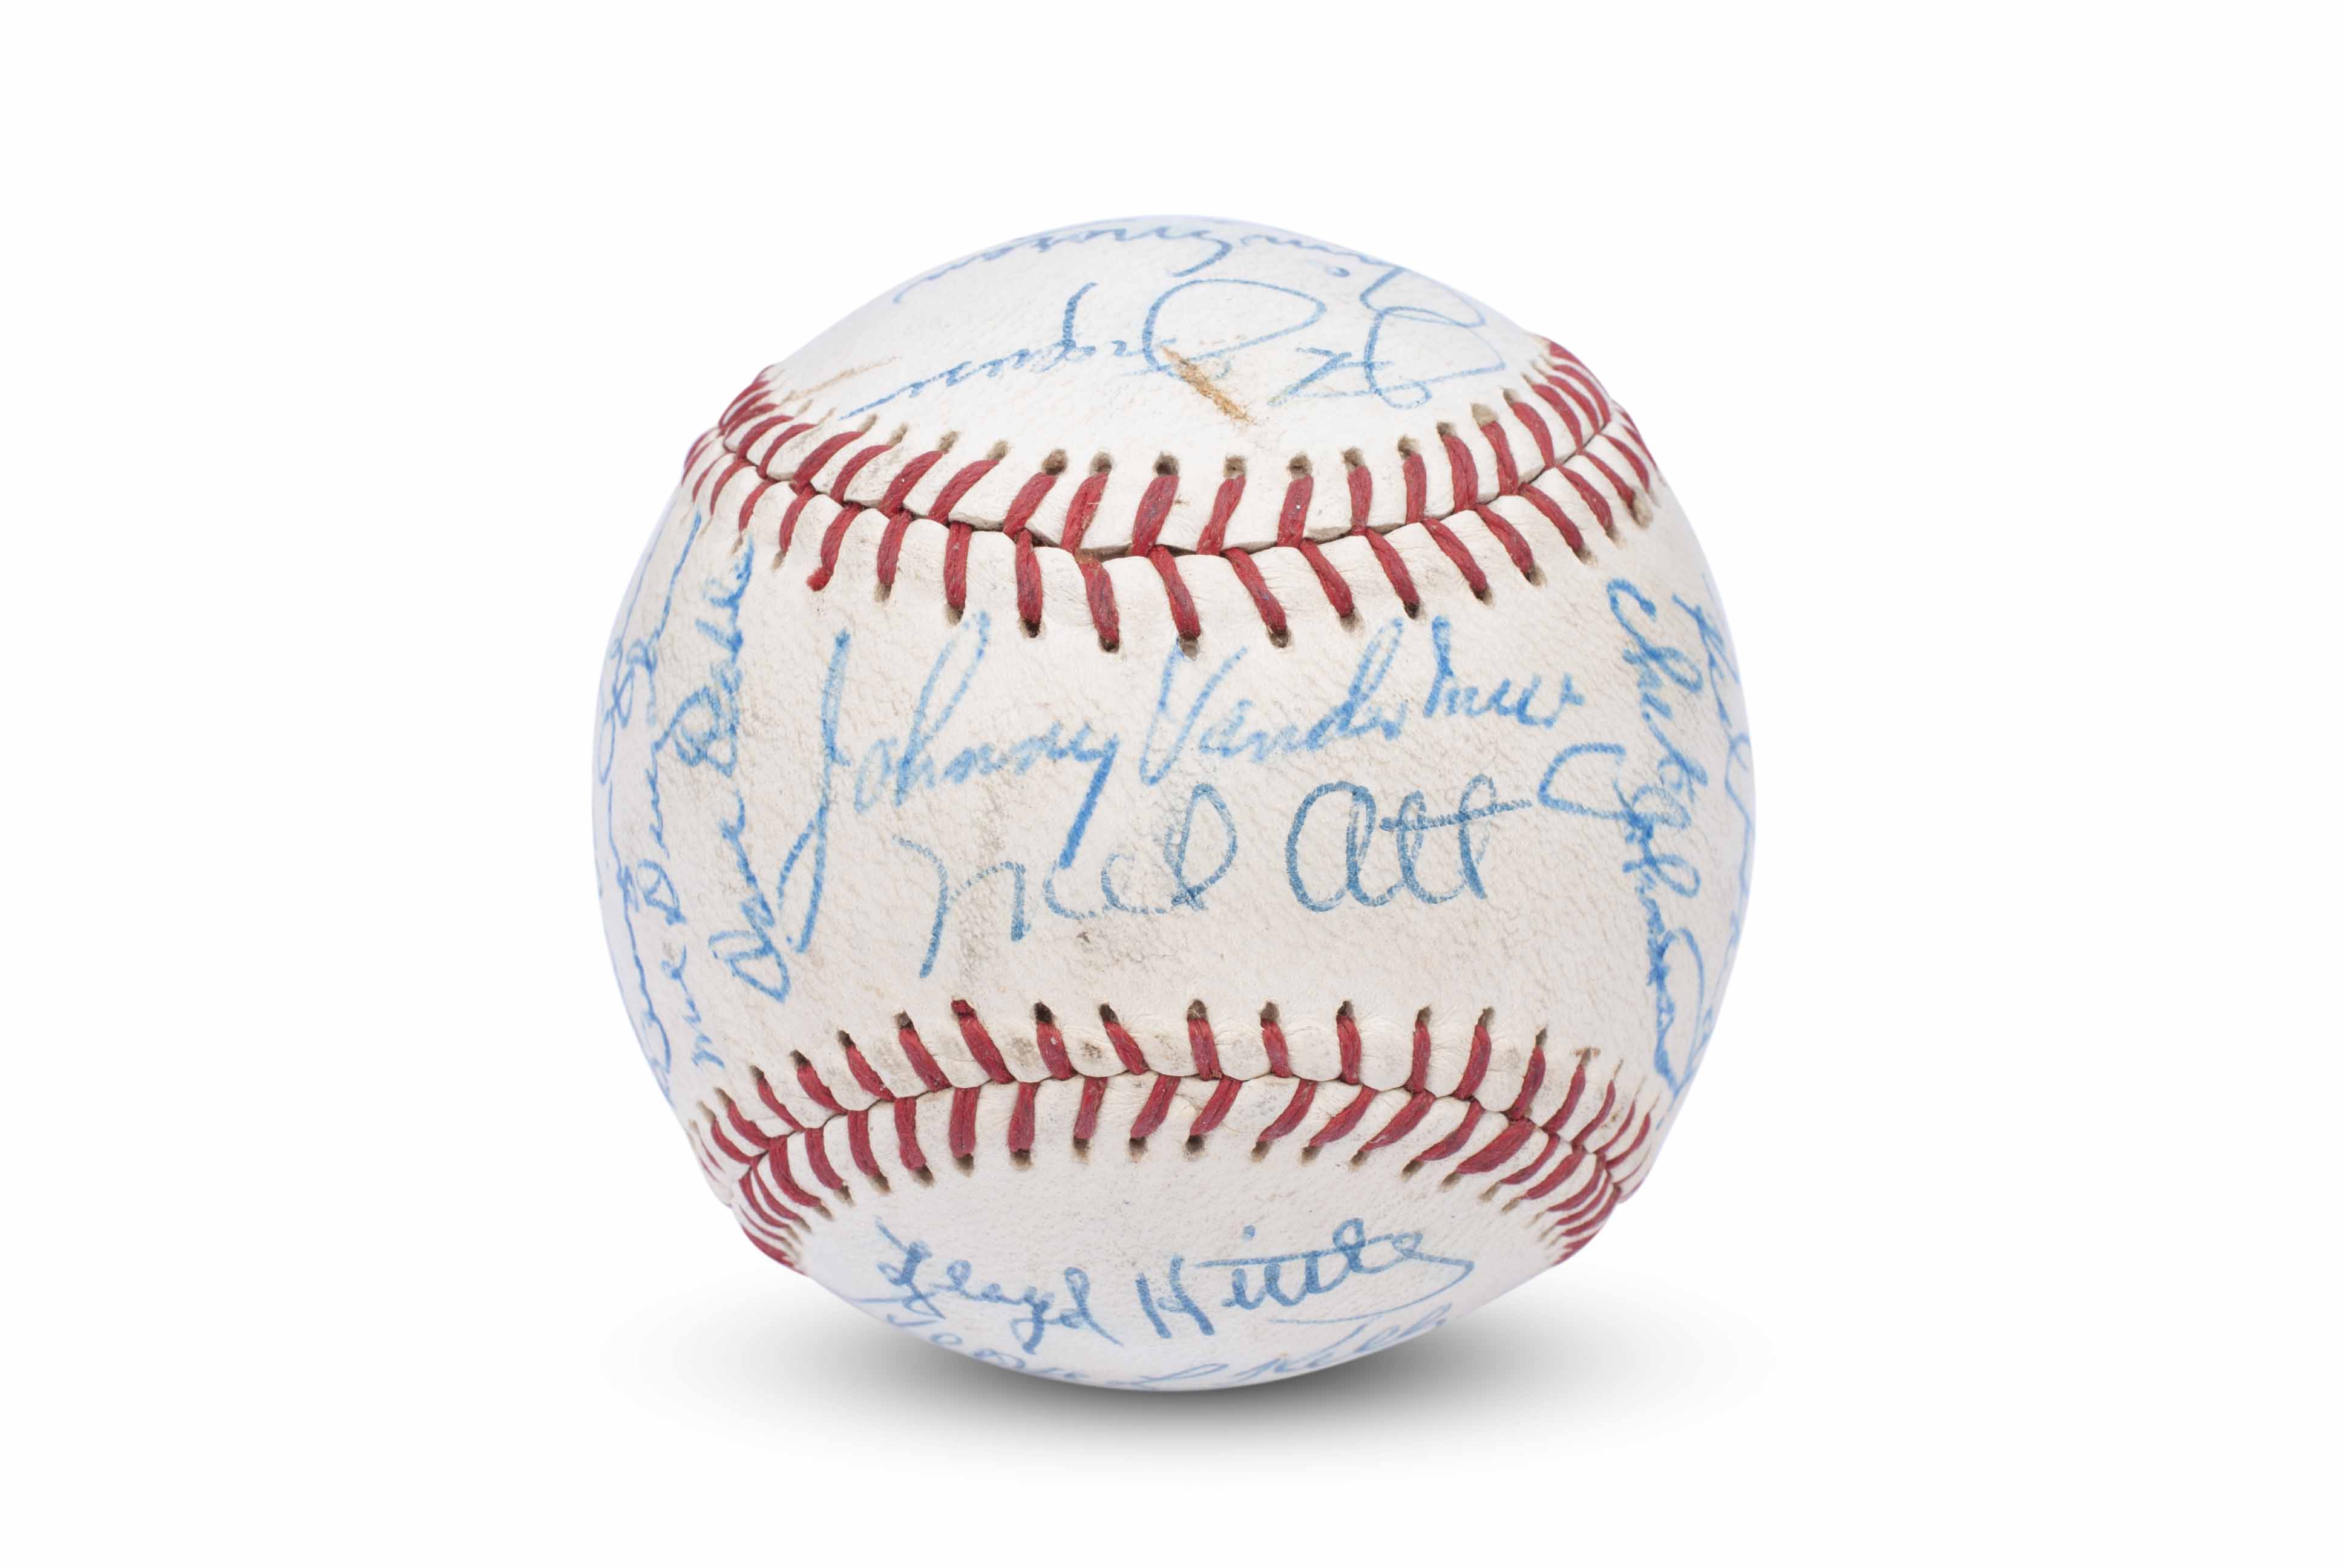 oakland oaks baseball